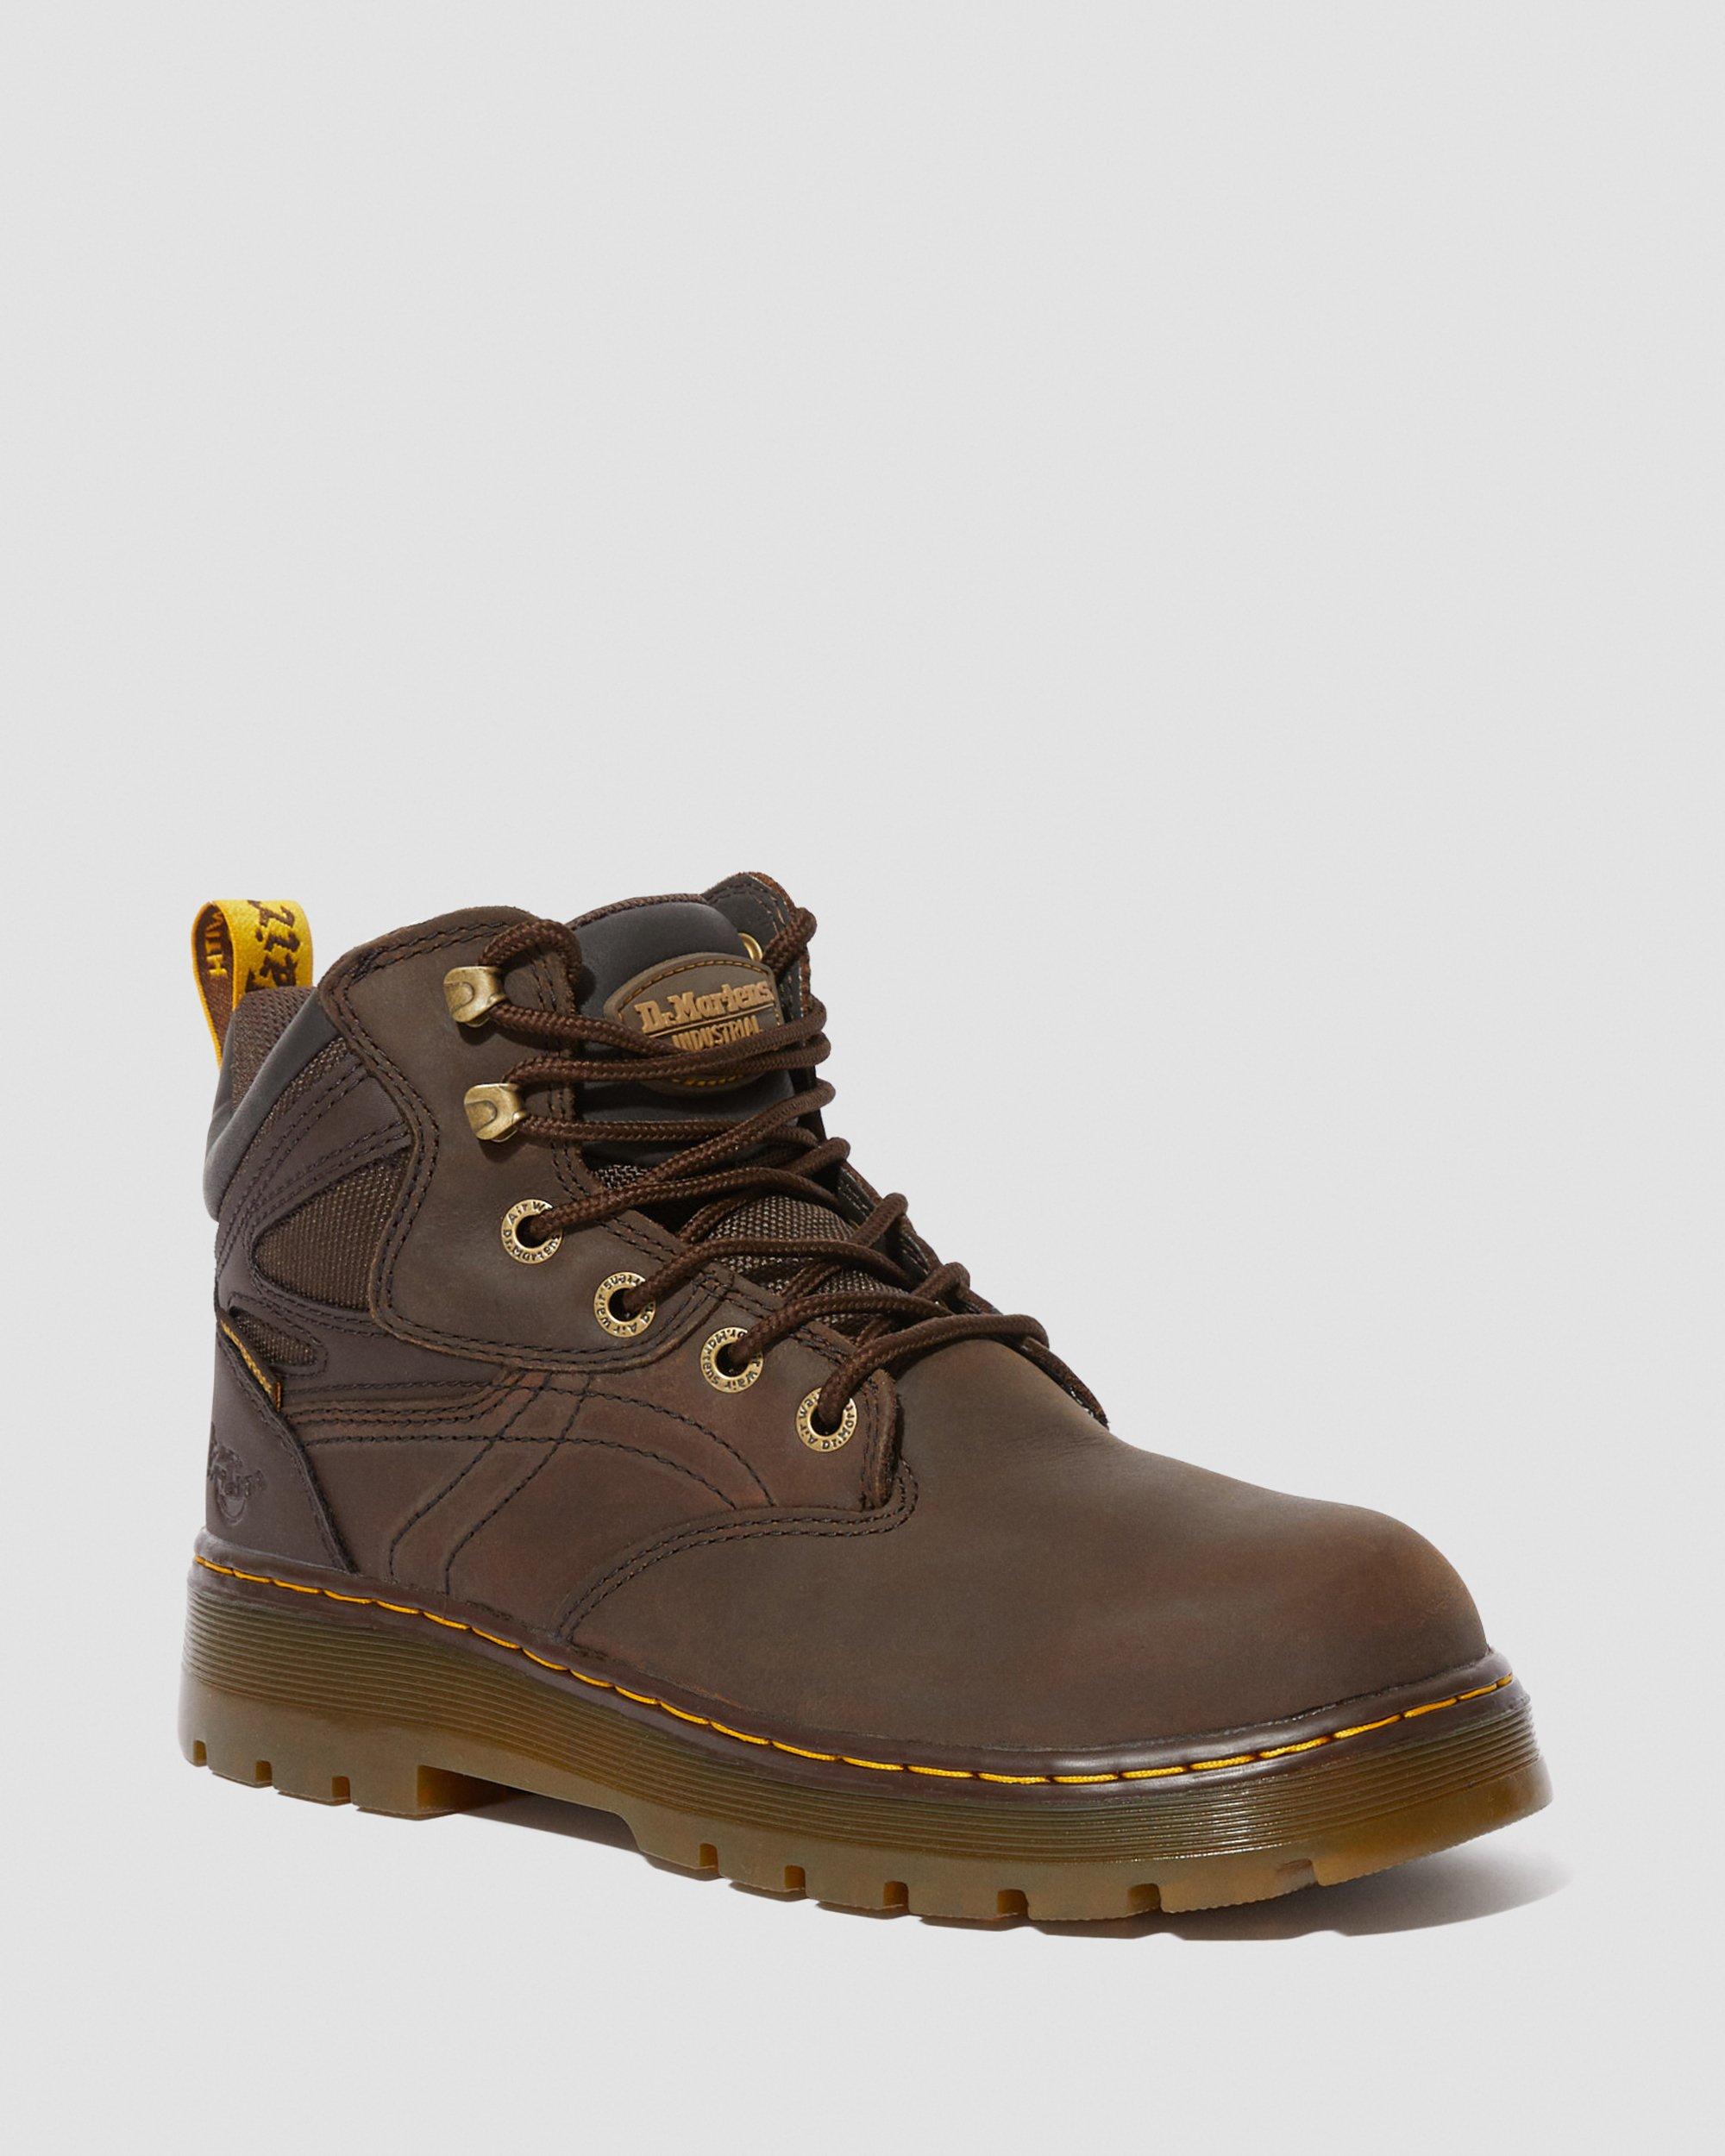 durable waterproof work boots